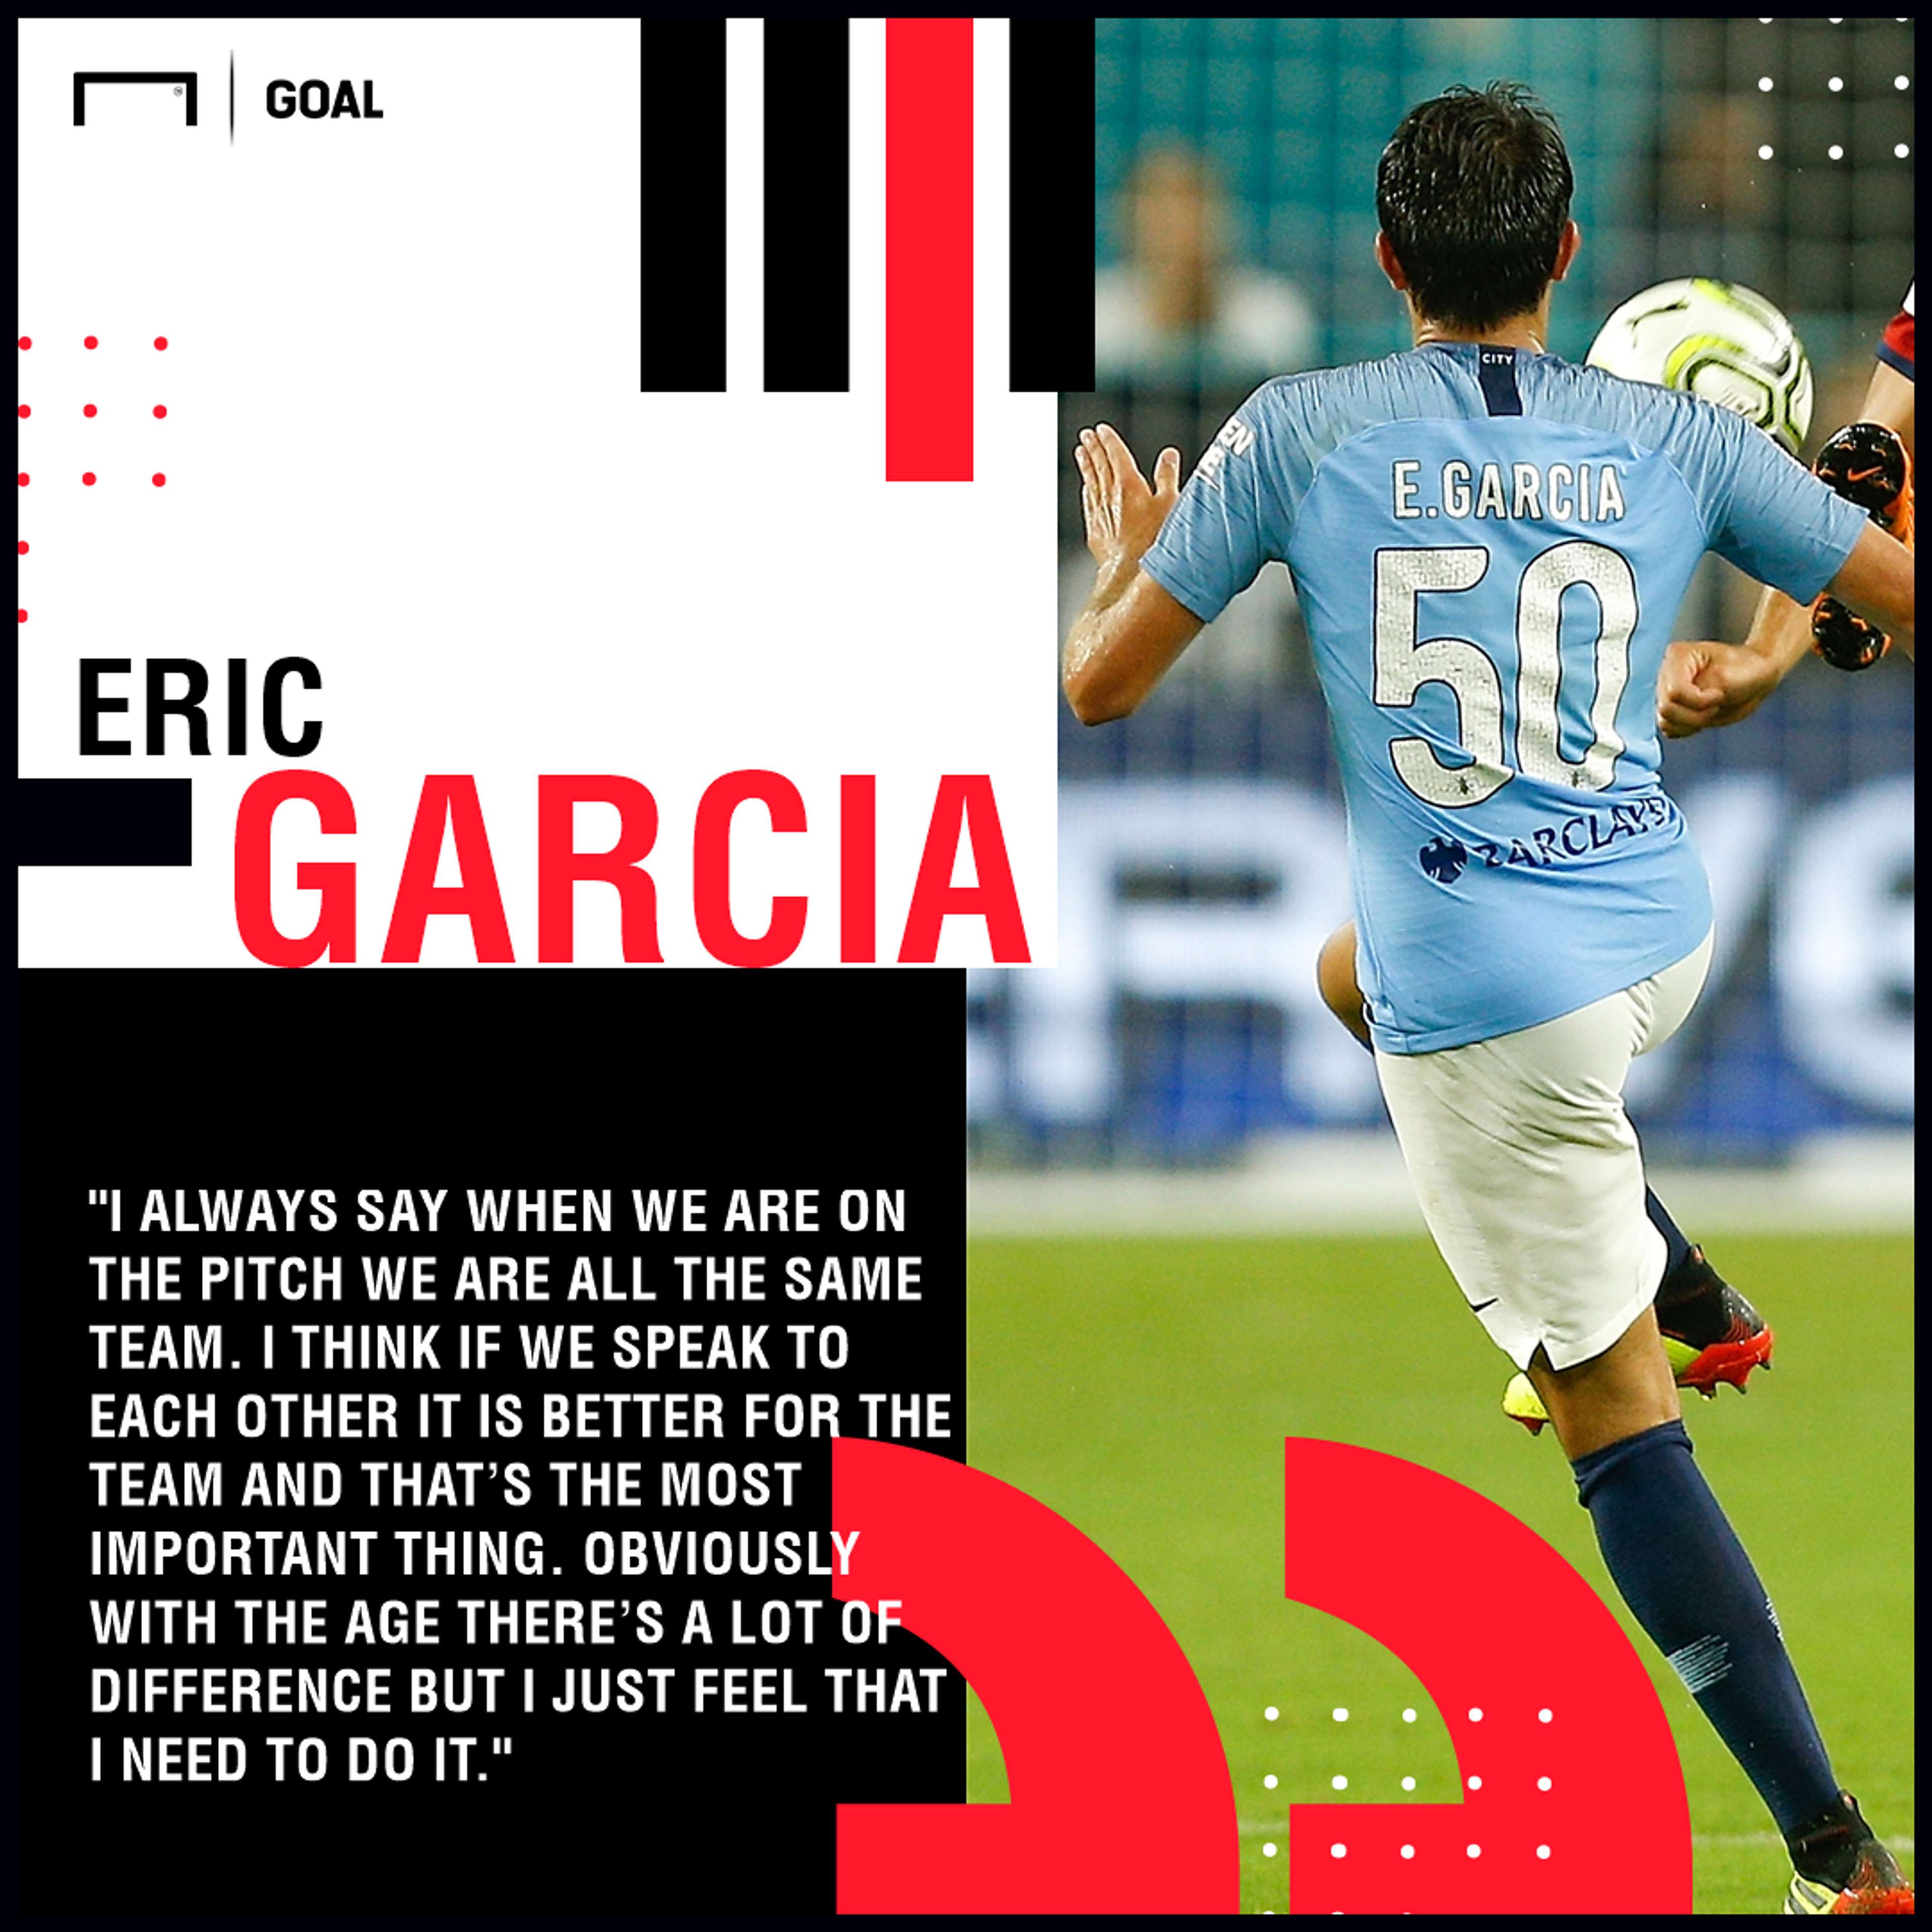 Garcia quote